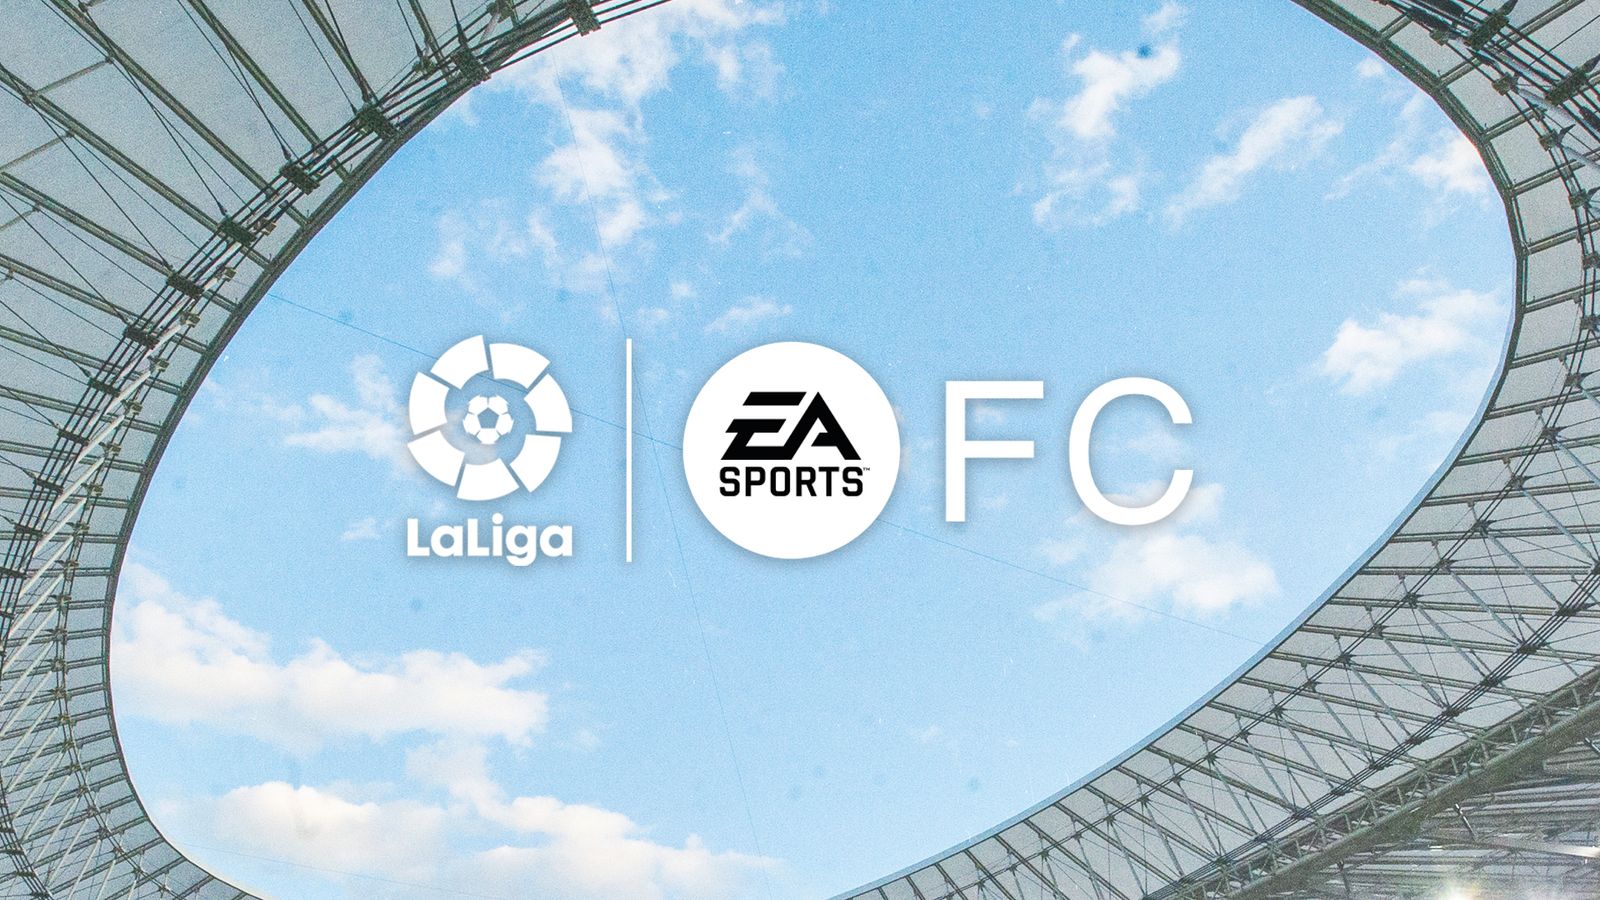 EA Sports and La Liga